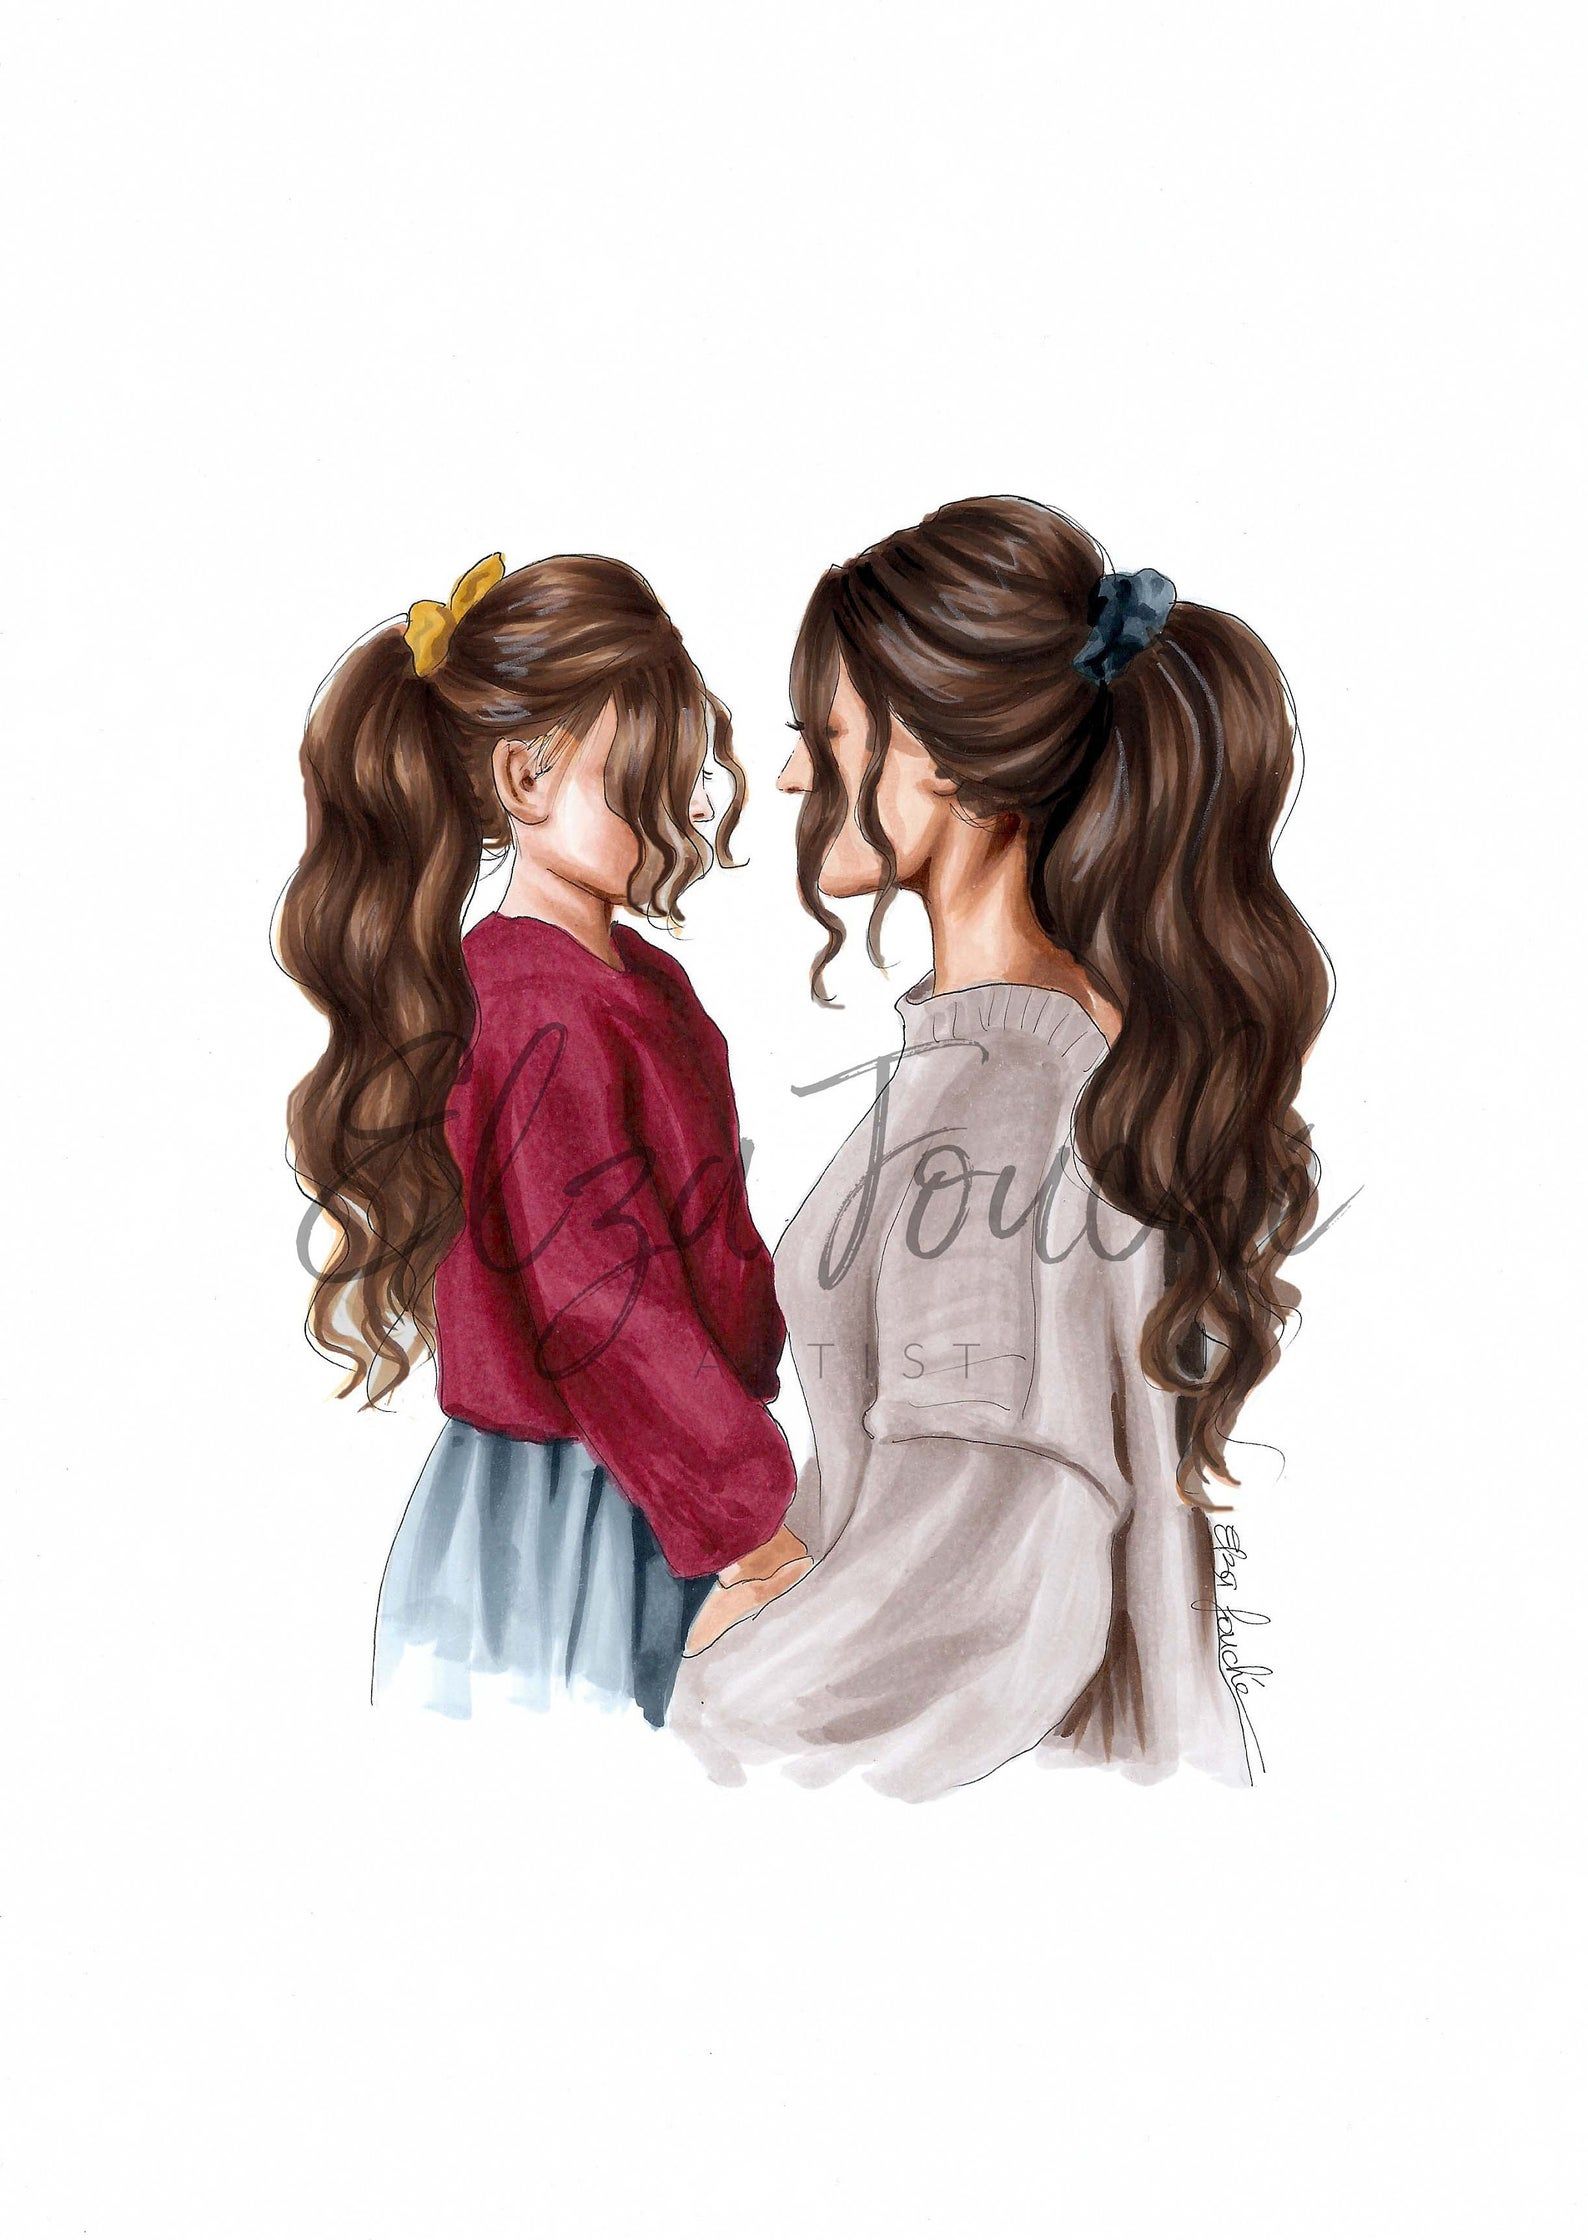 Mẹ và con gái bộ tranh chạm đến những tình cảm ngọt ngào và bình dị nhất